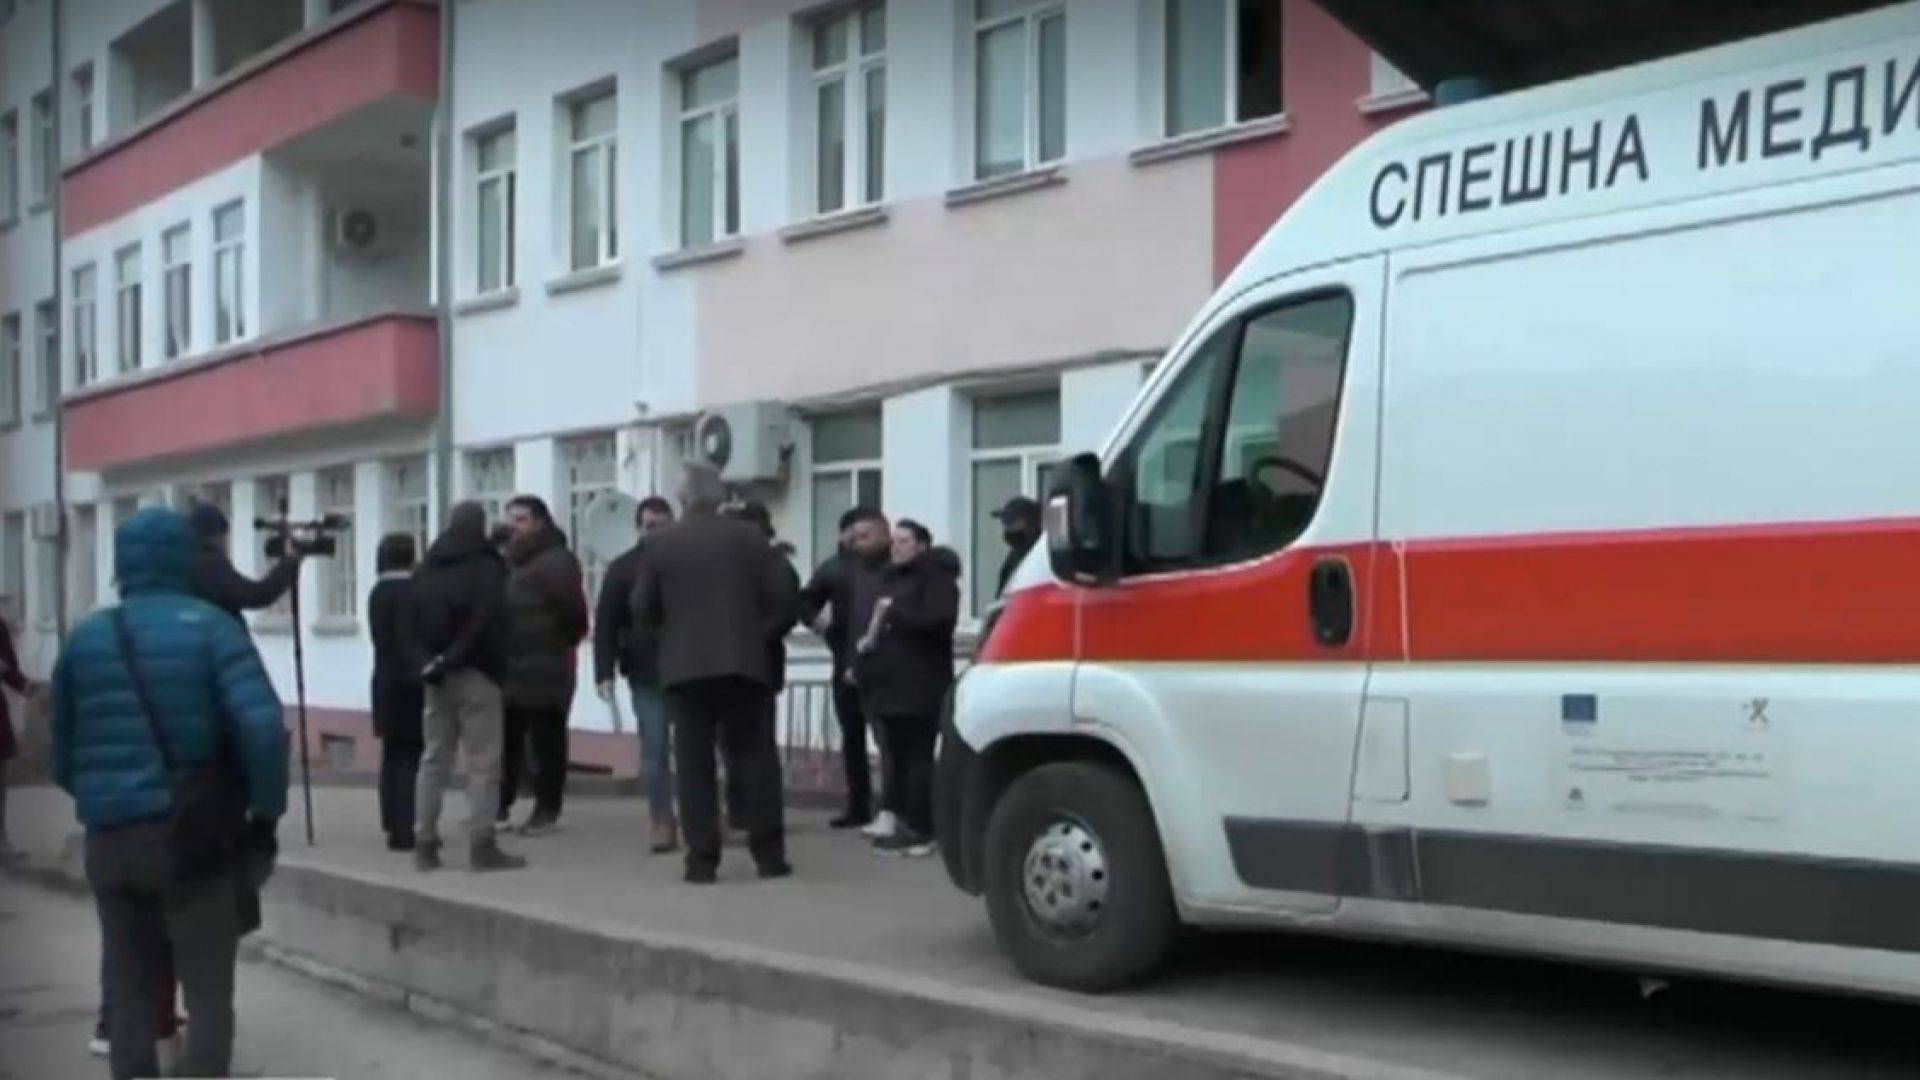 СЕМ реагира на безкритичното разпространение на клипа от болницата във Враца